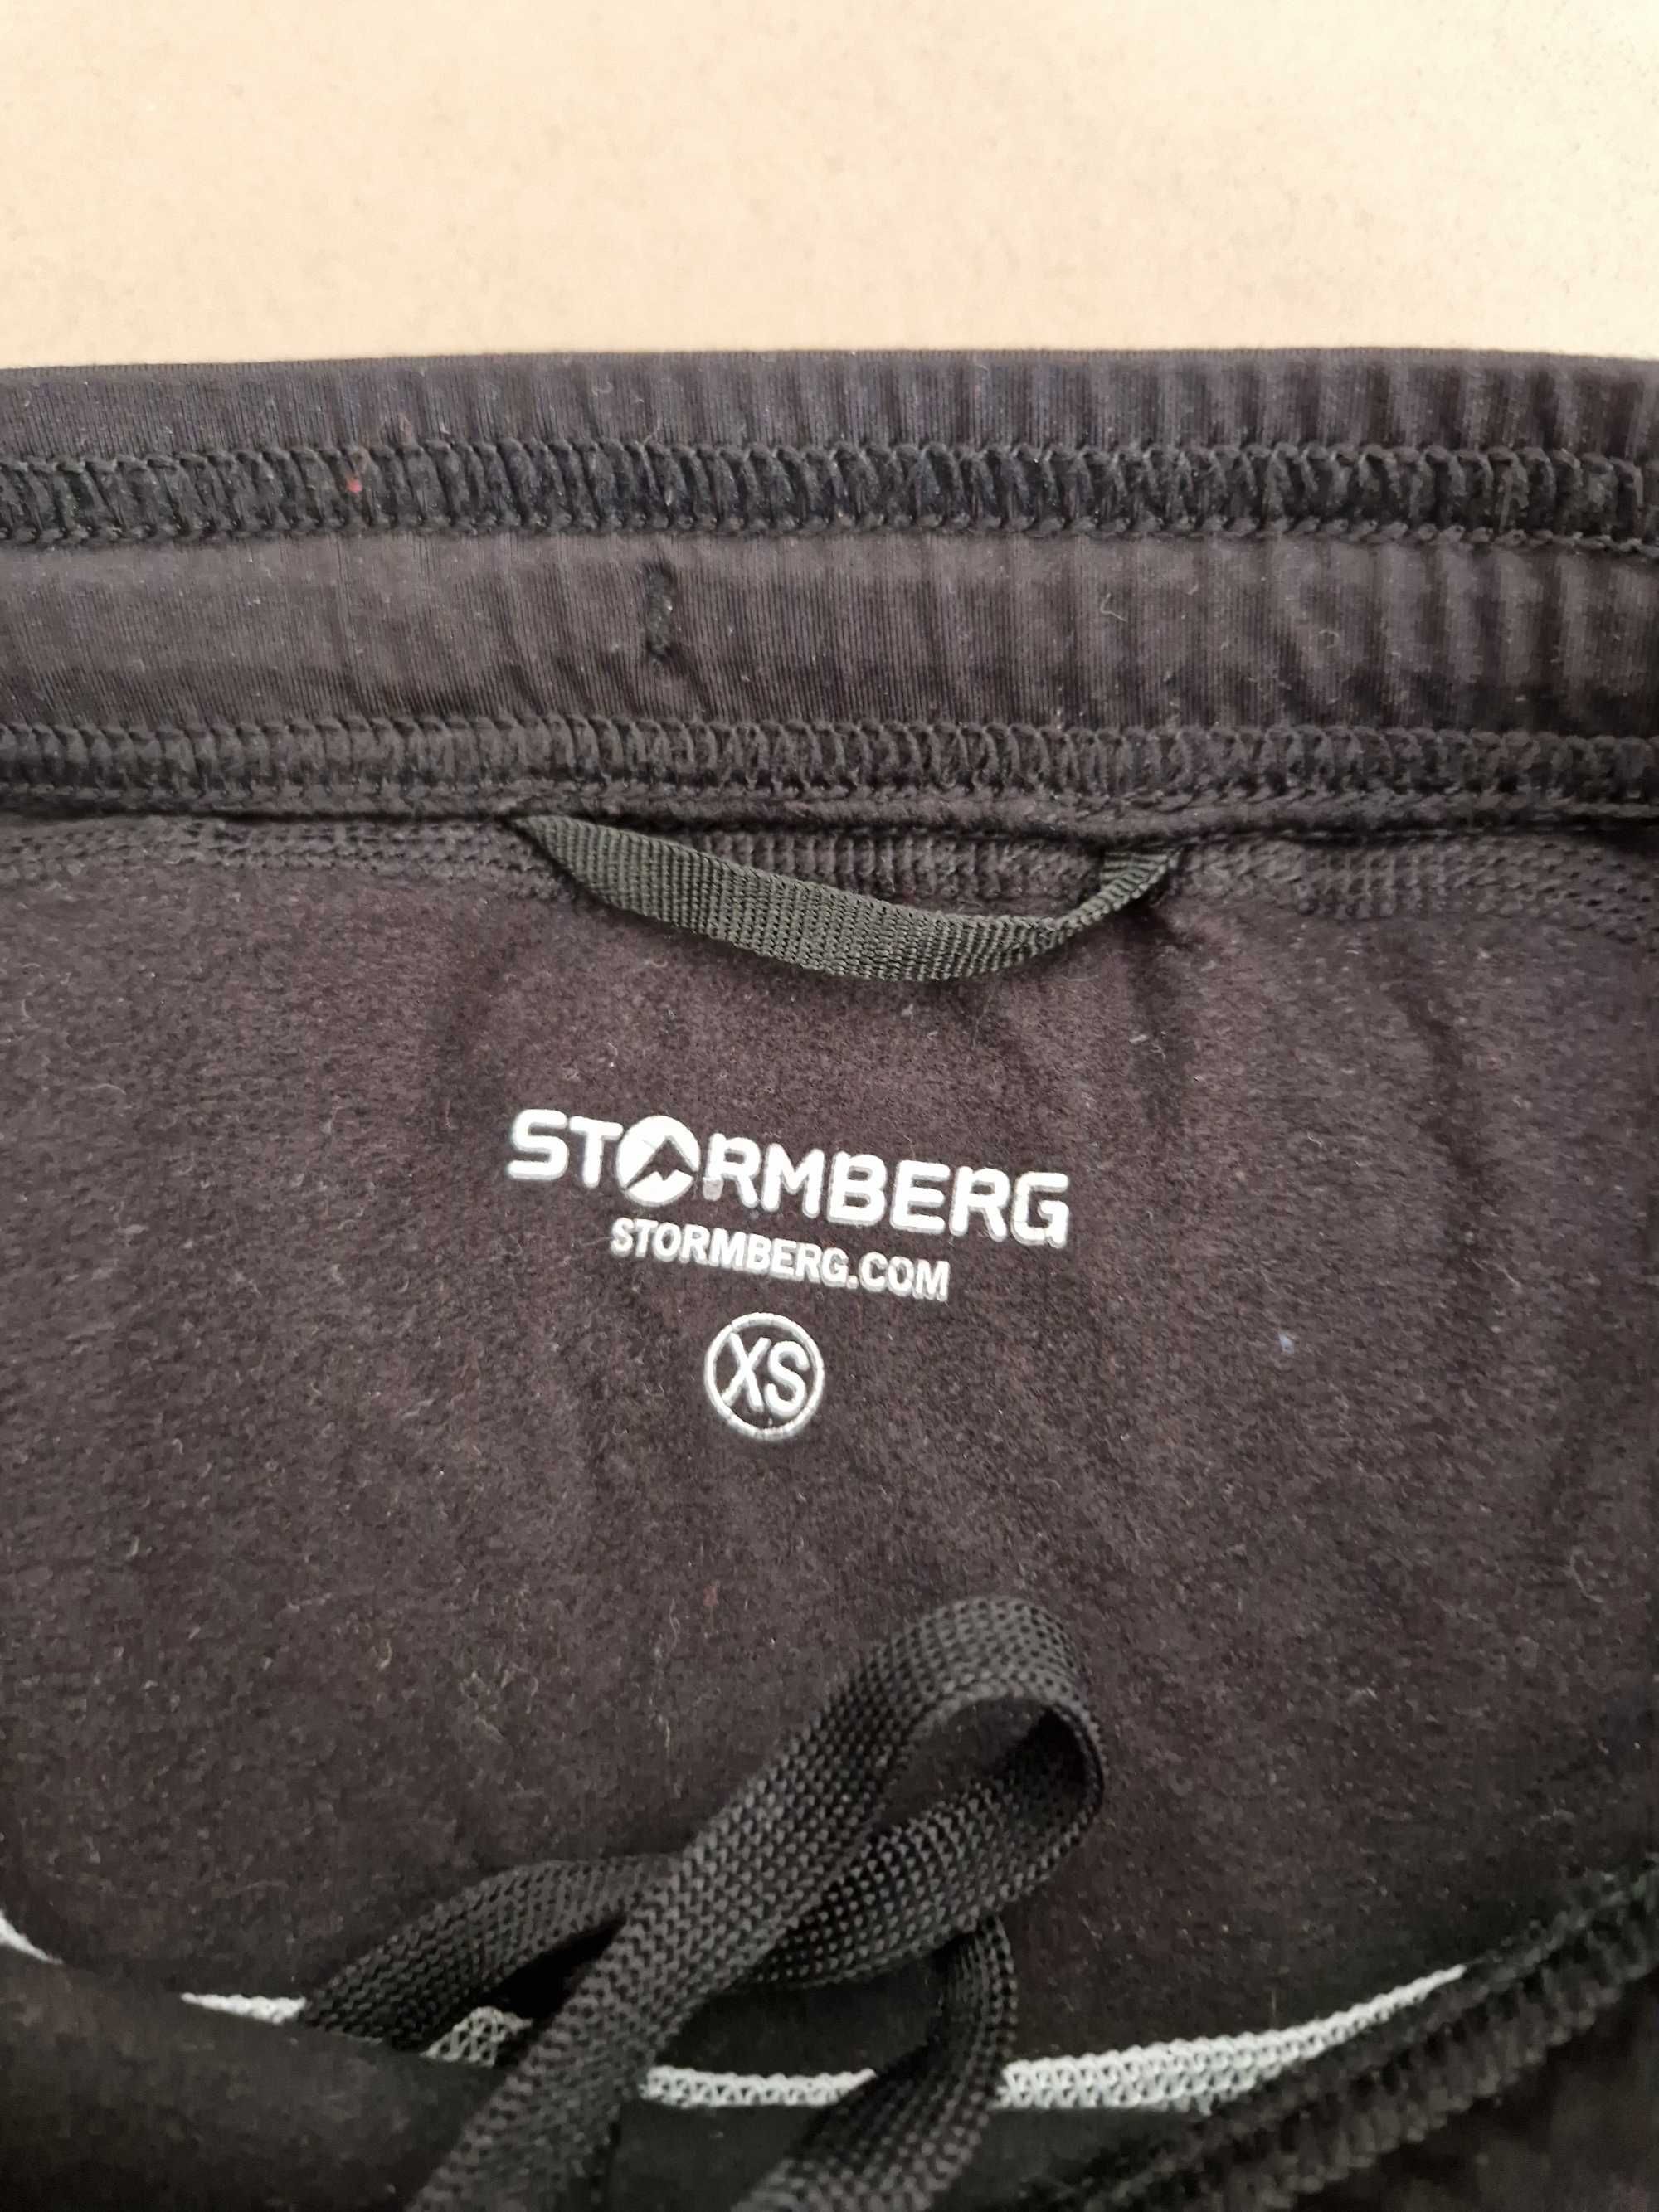 Stormberg leginsy ,getry ,spodnie trekkingowe XS